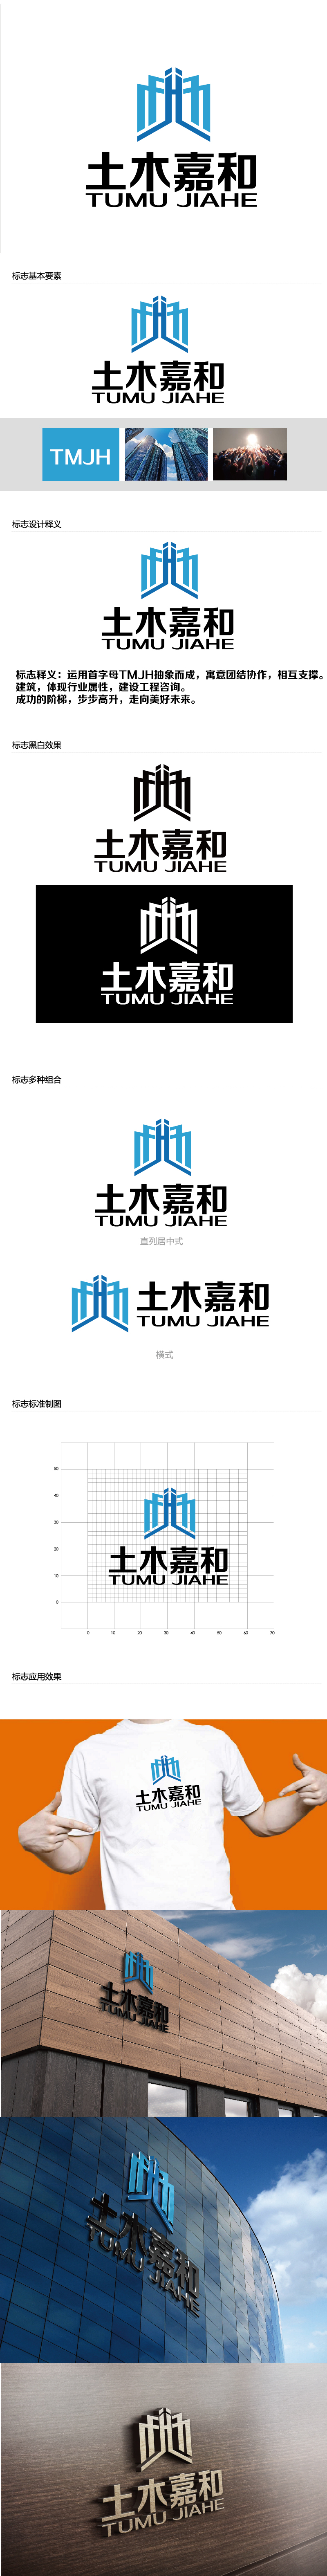 曾万勇的北京土木嘉和工程咨询有限公司logo设计